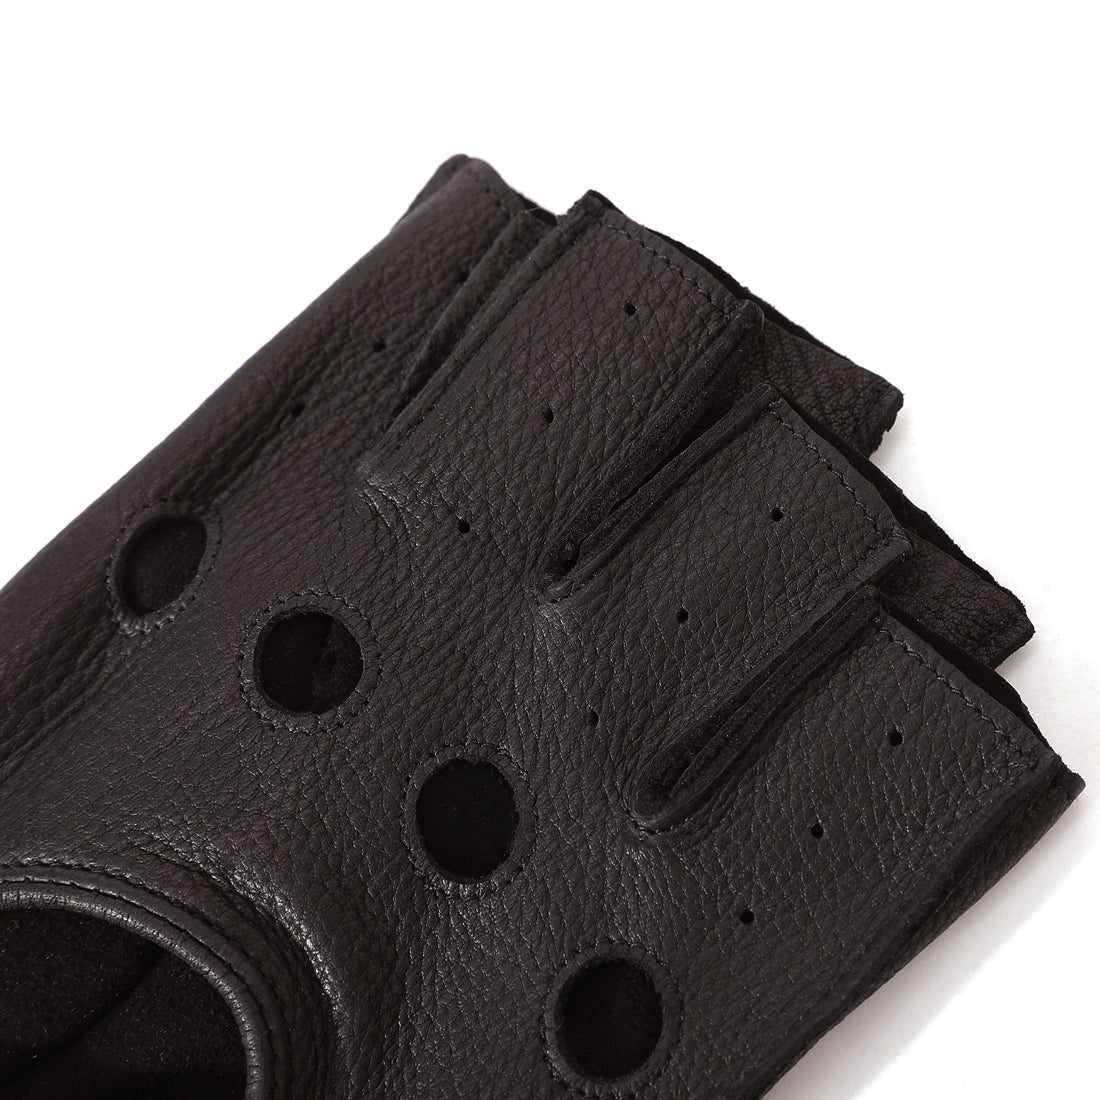 Pareja de guantes de conducción Foto de stock 563377816